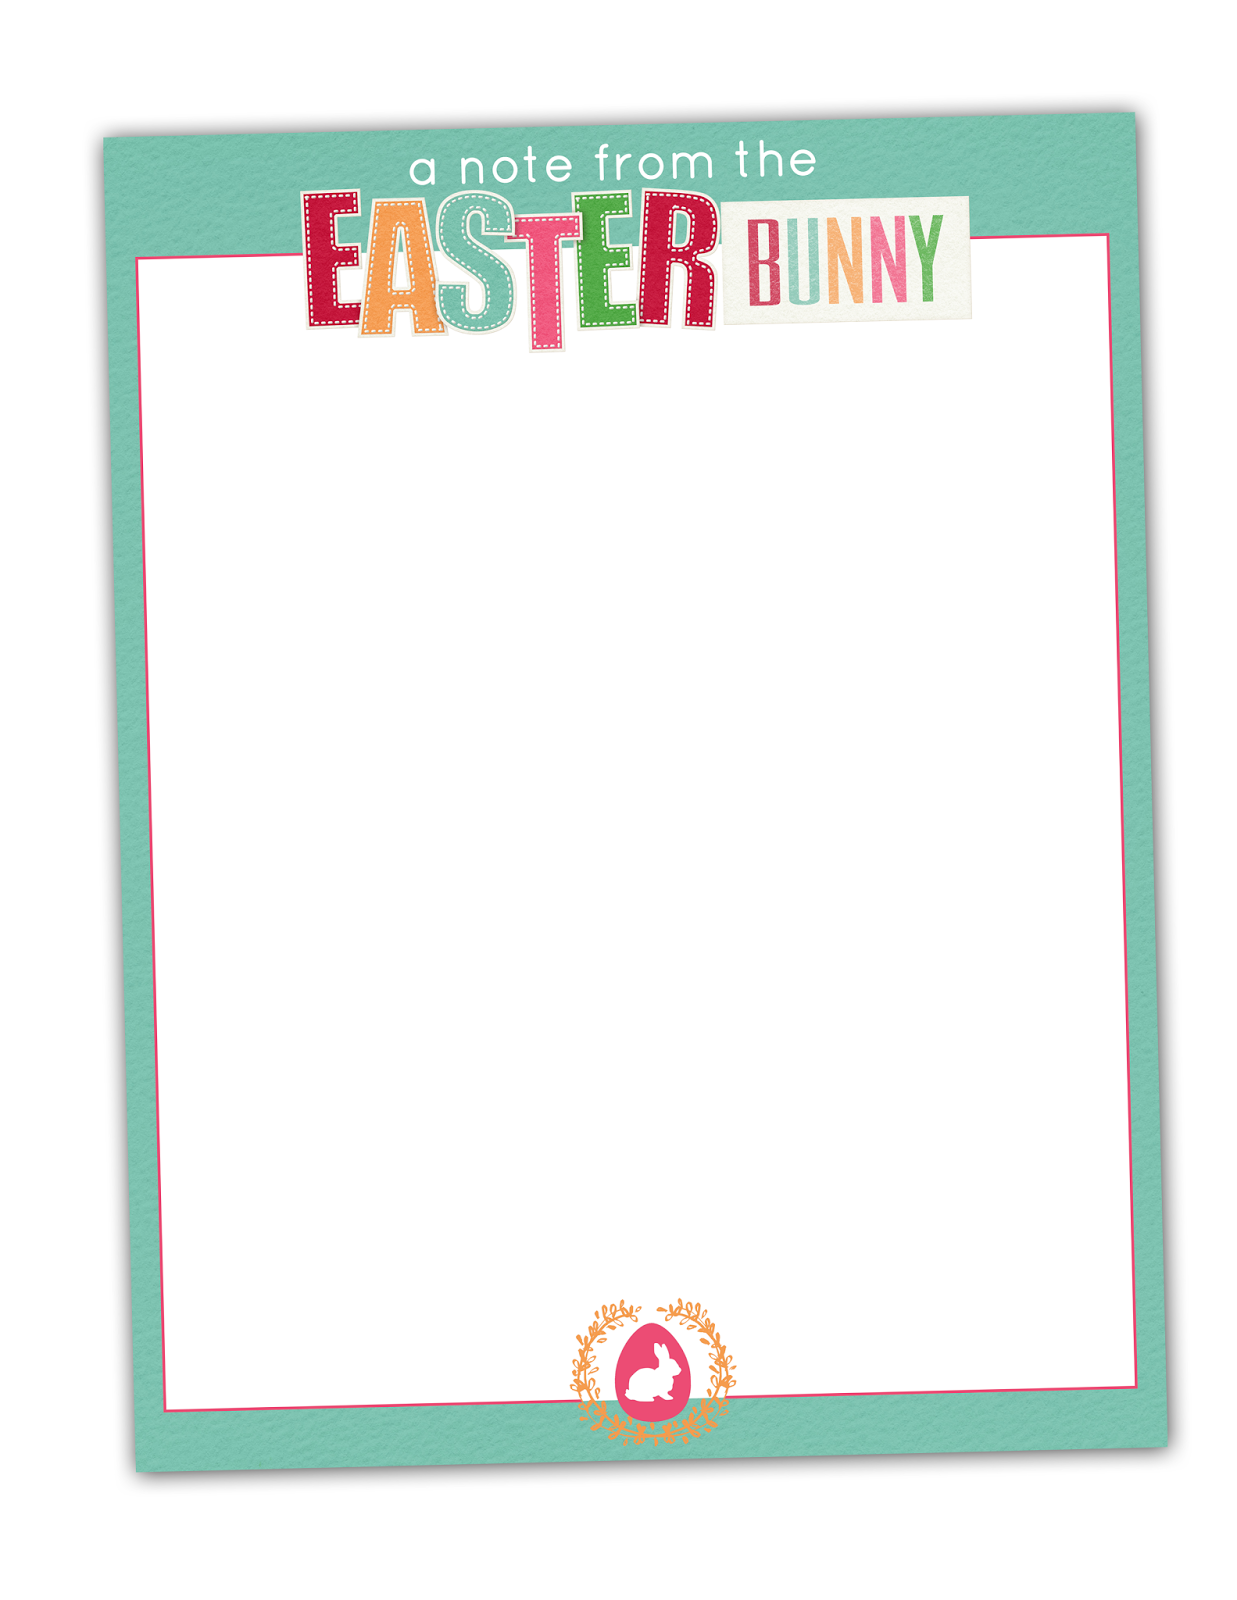 printable-easter-bunny-letterhead-printable-world-holiday